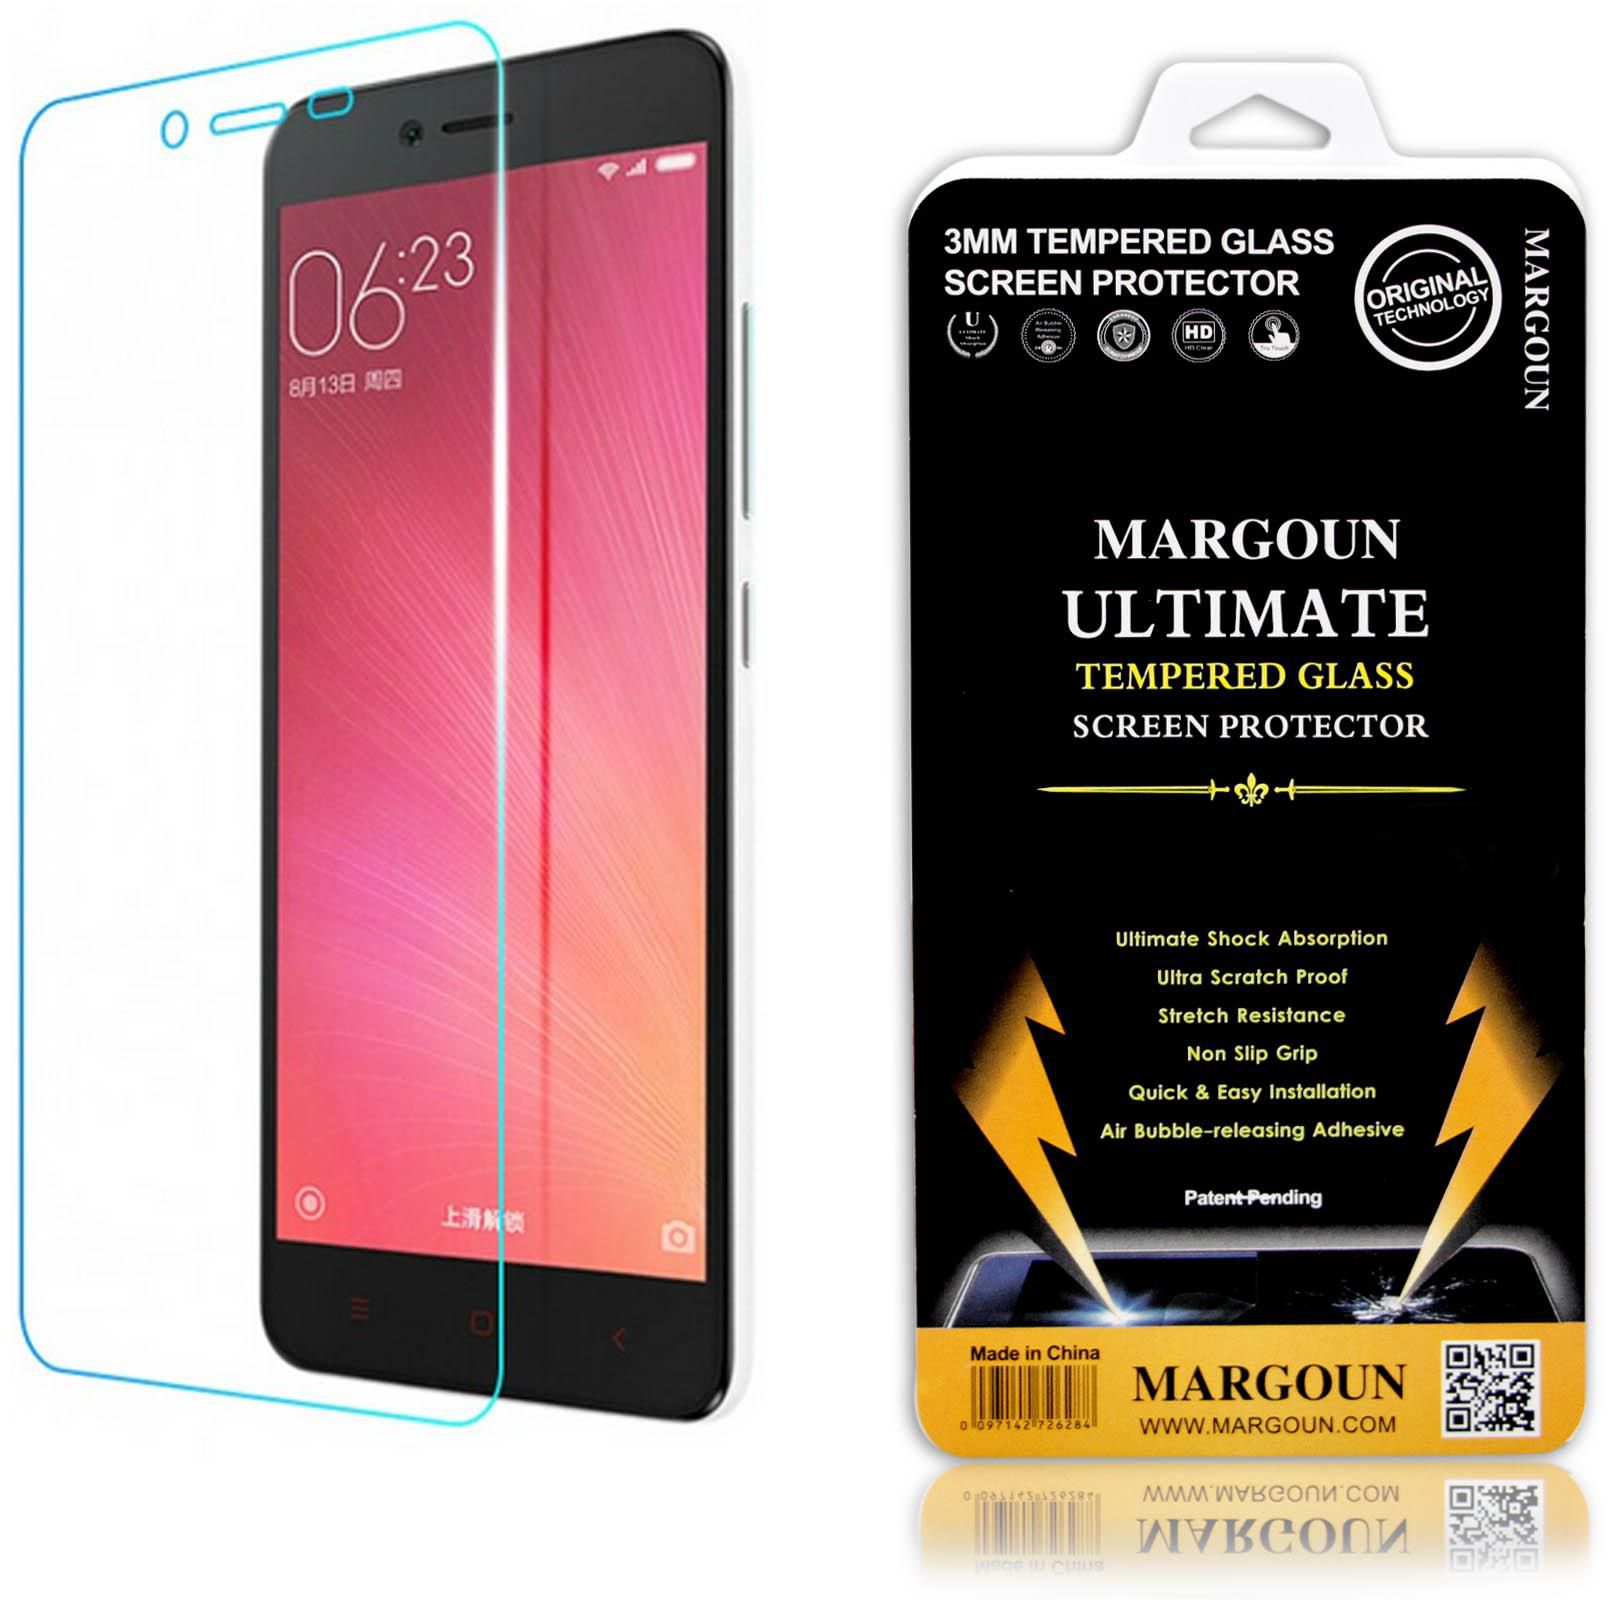 Margoun Tempered Glass Screen Protector for Xiaomi Redmi Note 2